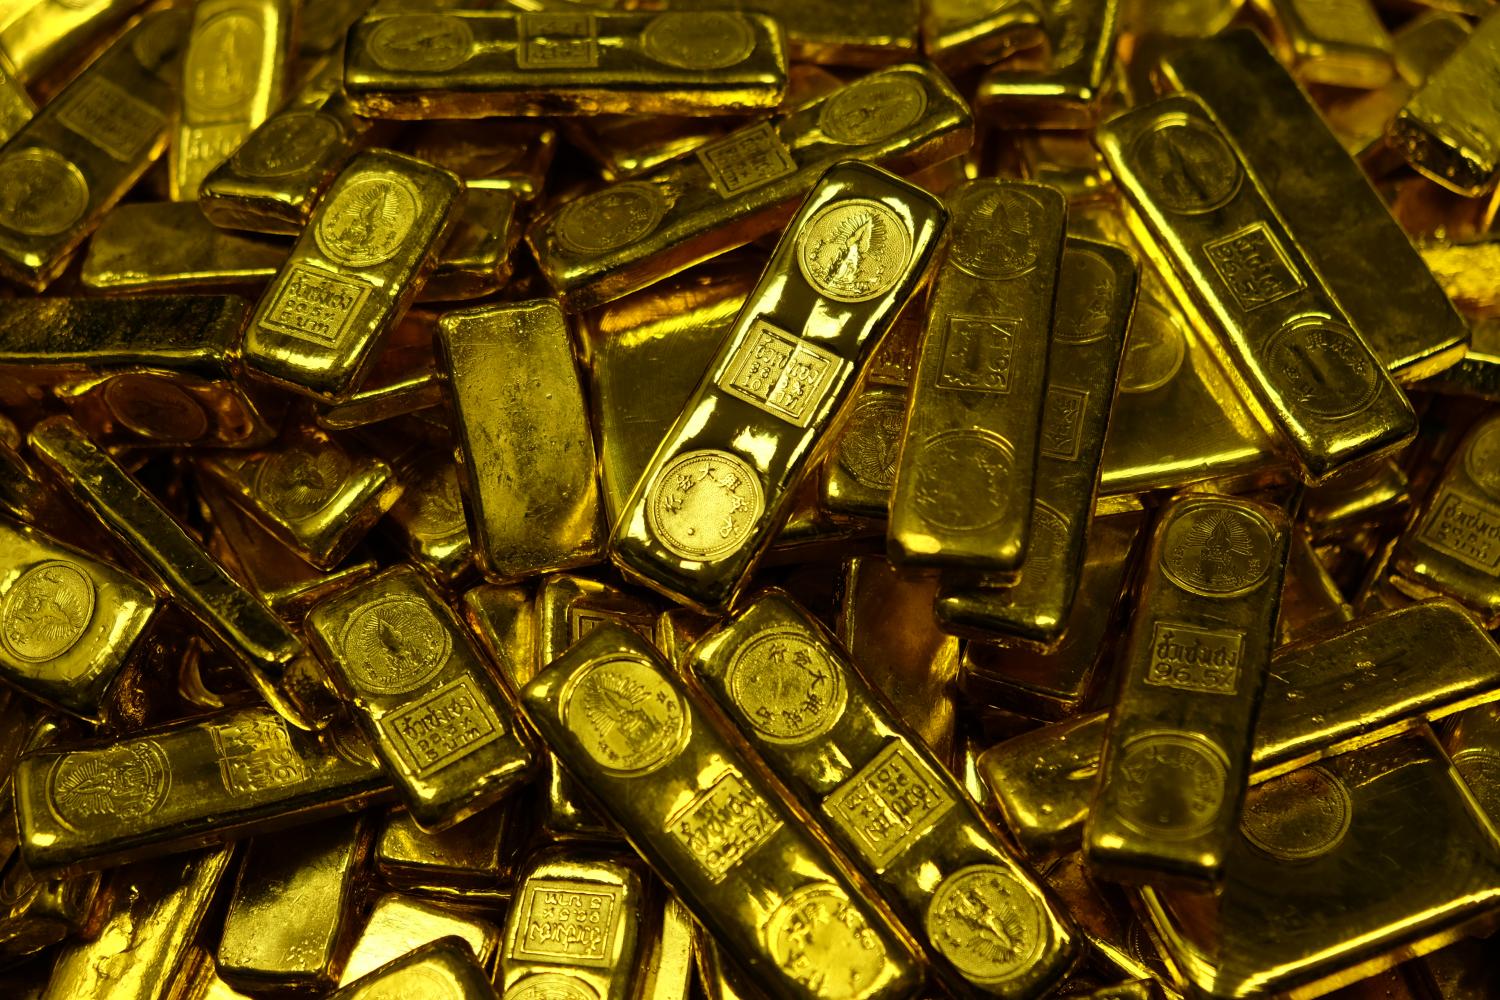 Glöm inte detta lands påverkan på guldpriset